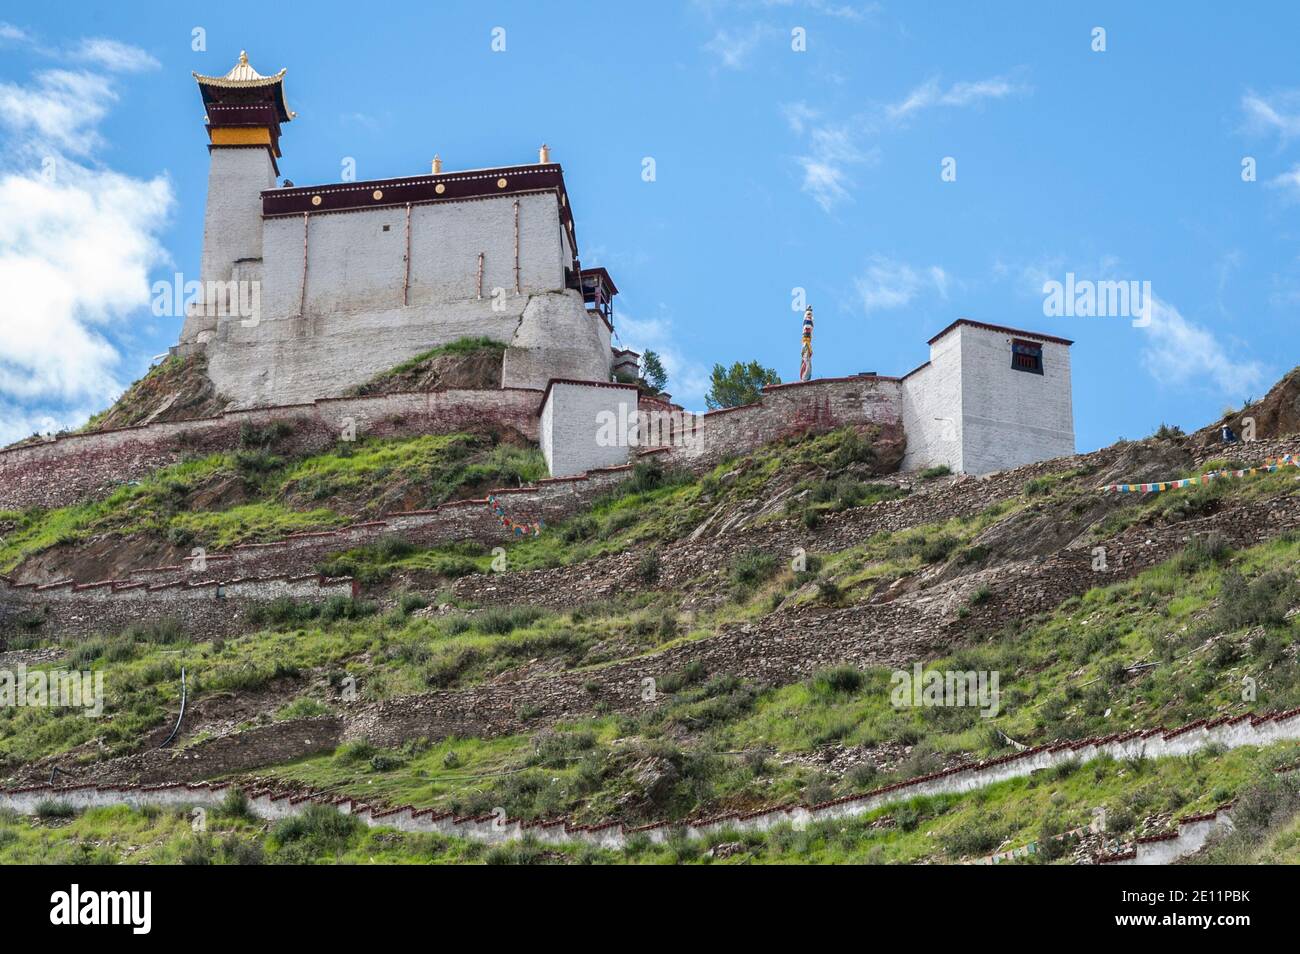 Le palais de Yungbulakang, également connu sous le nom de Yumbu Lakhang, est un ancien Structure dans la vallée de Yarlung, à proximité de Tsetang Ville - Tibet Chine Banque D'Images